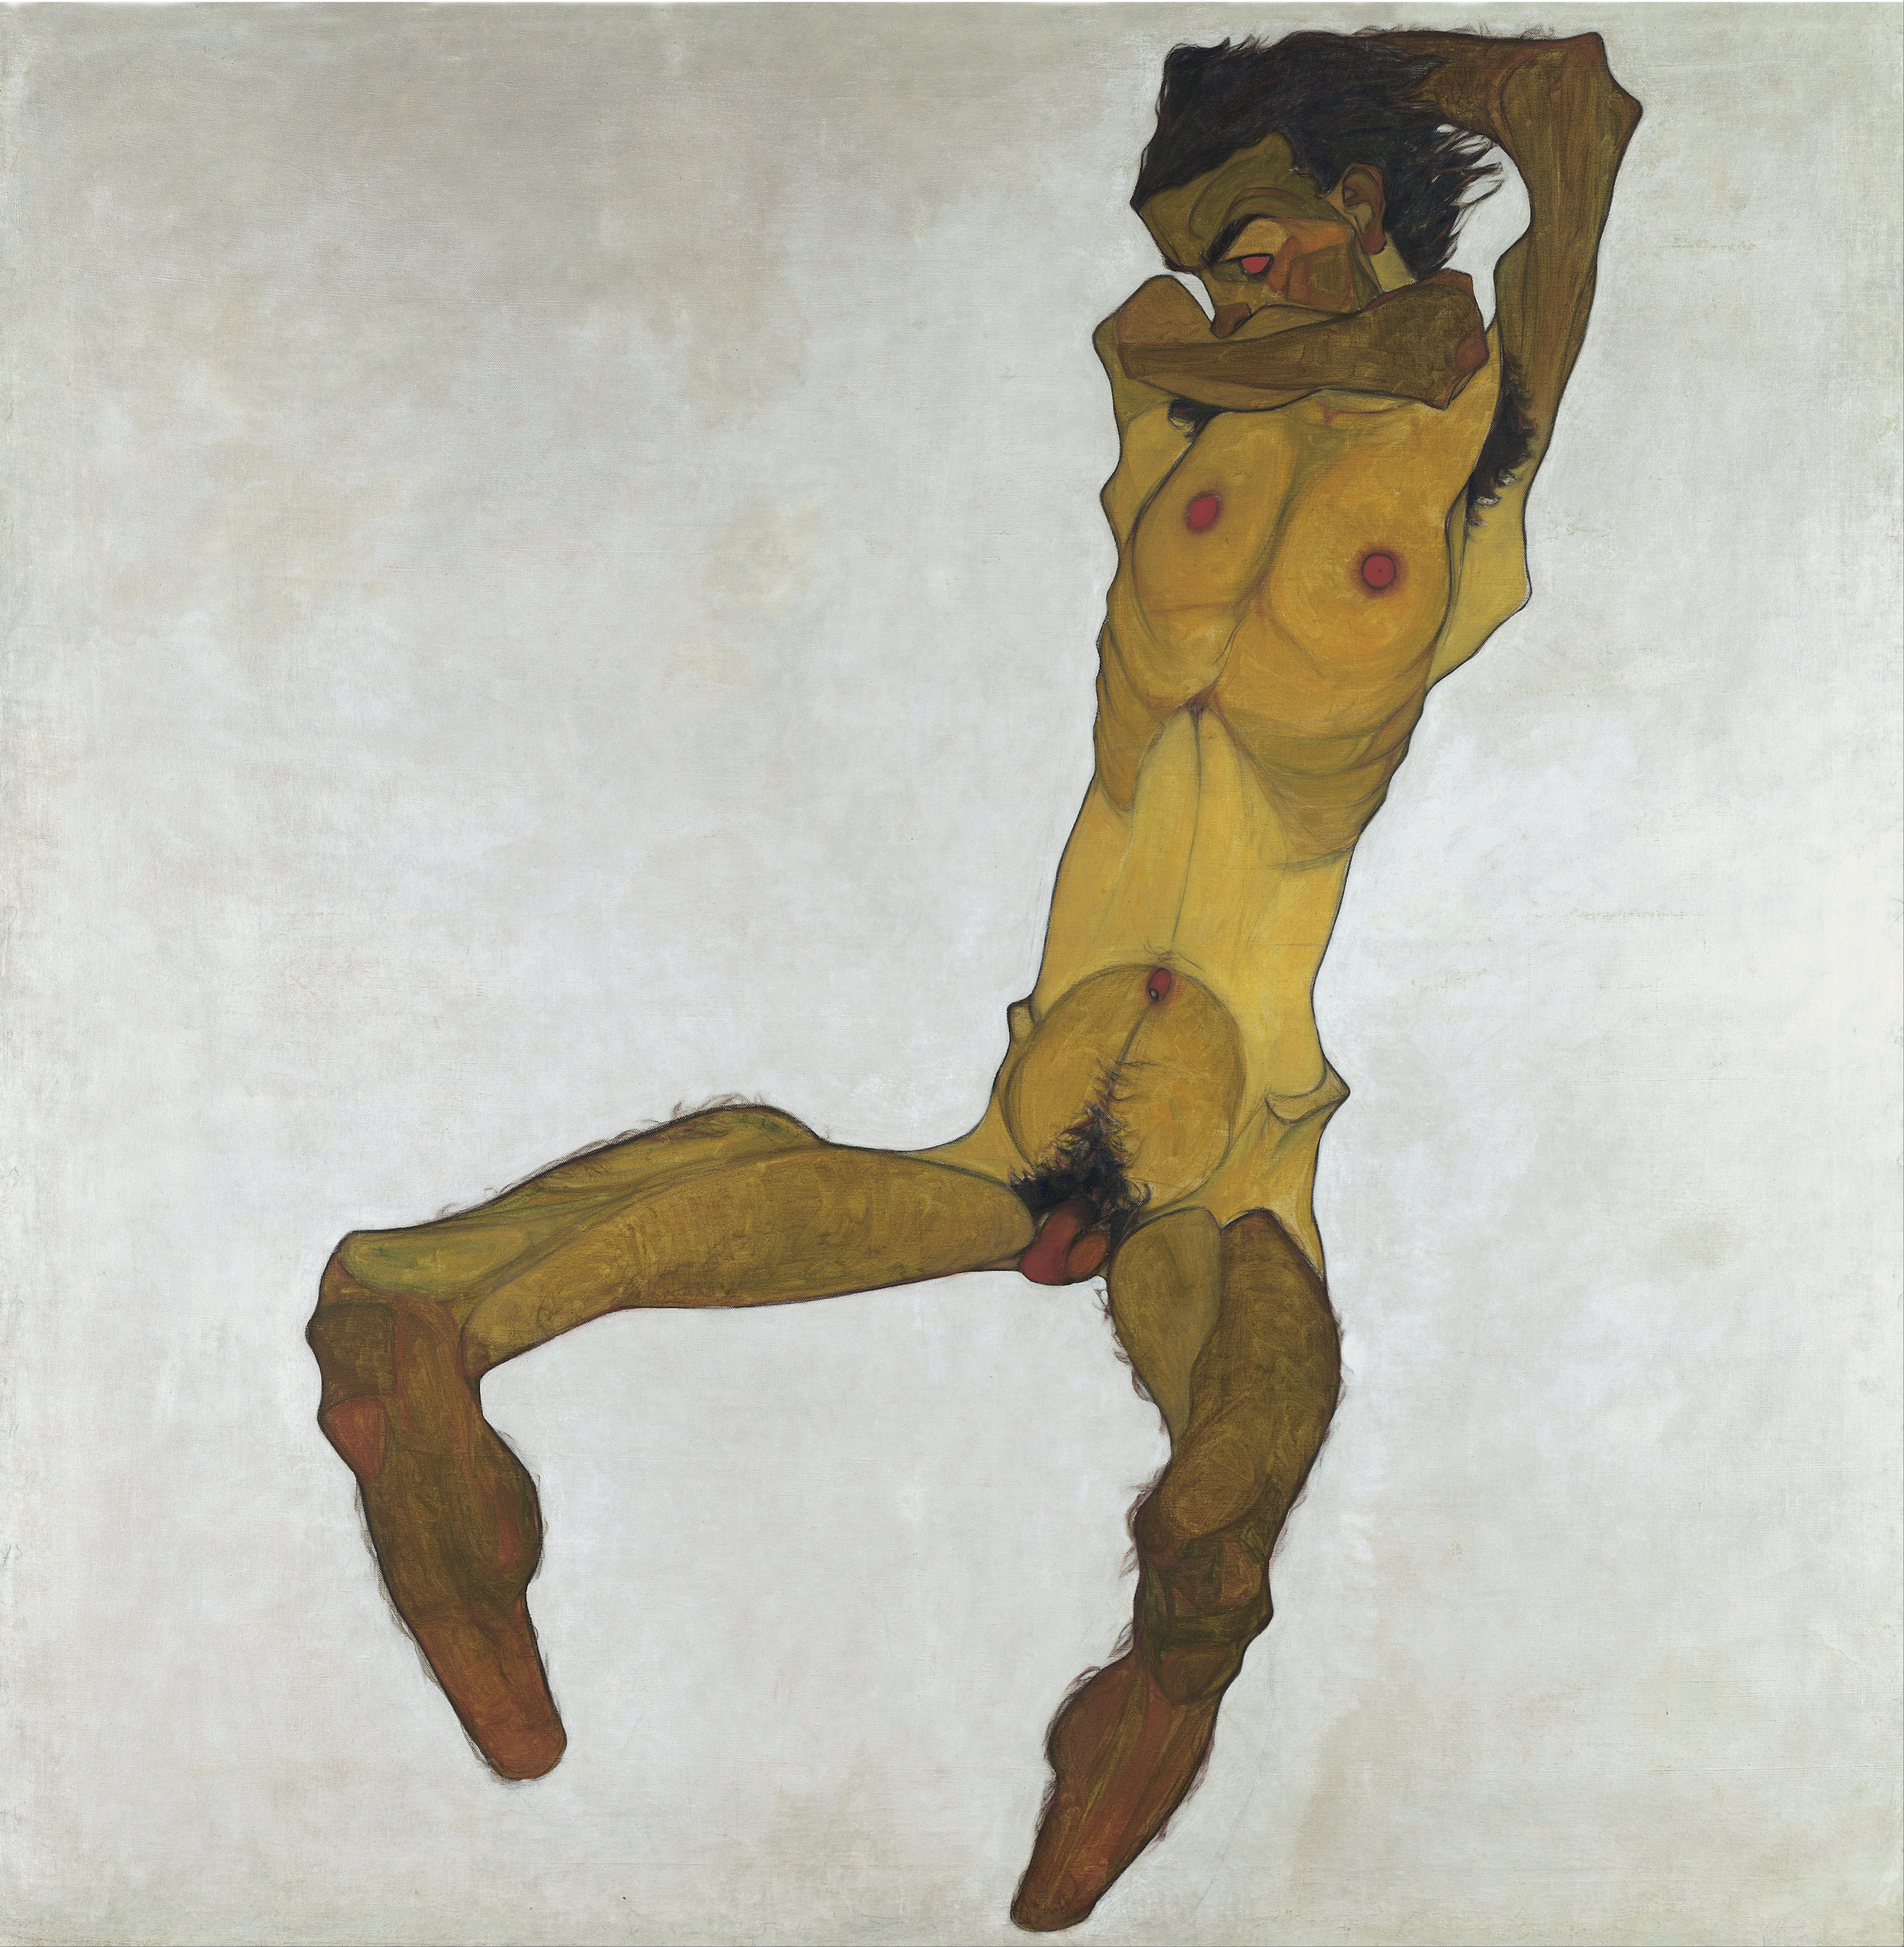 坐着的男性裸体(自画像) by Egon Schiele - 1910年 - 150 x 152.5cm 